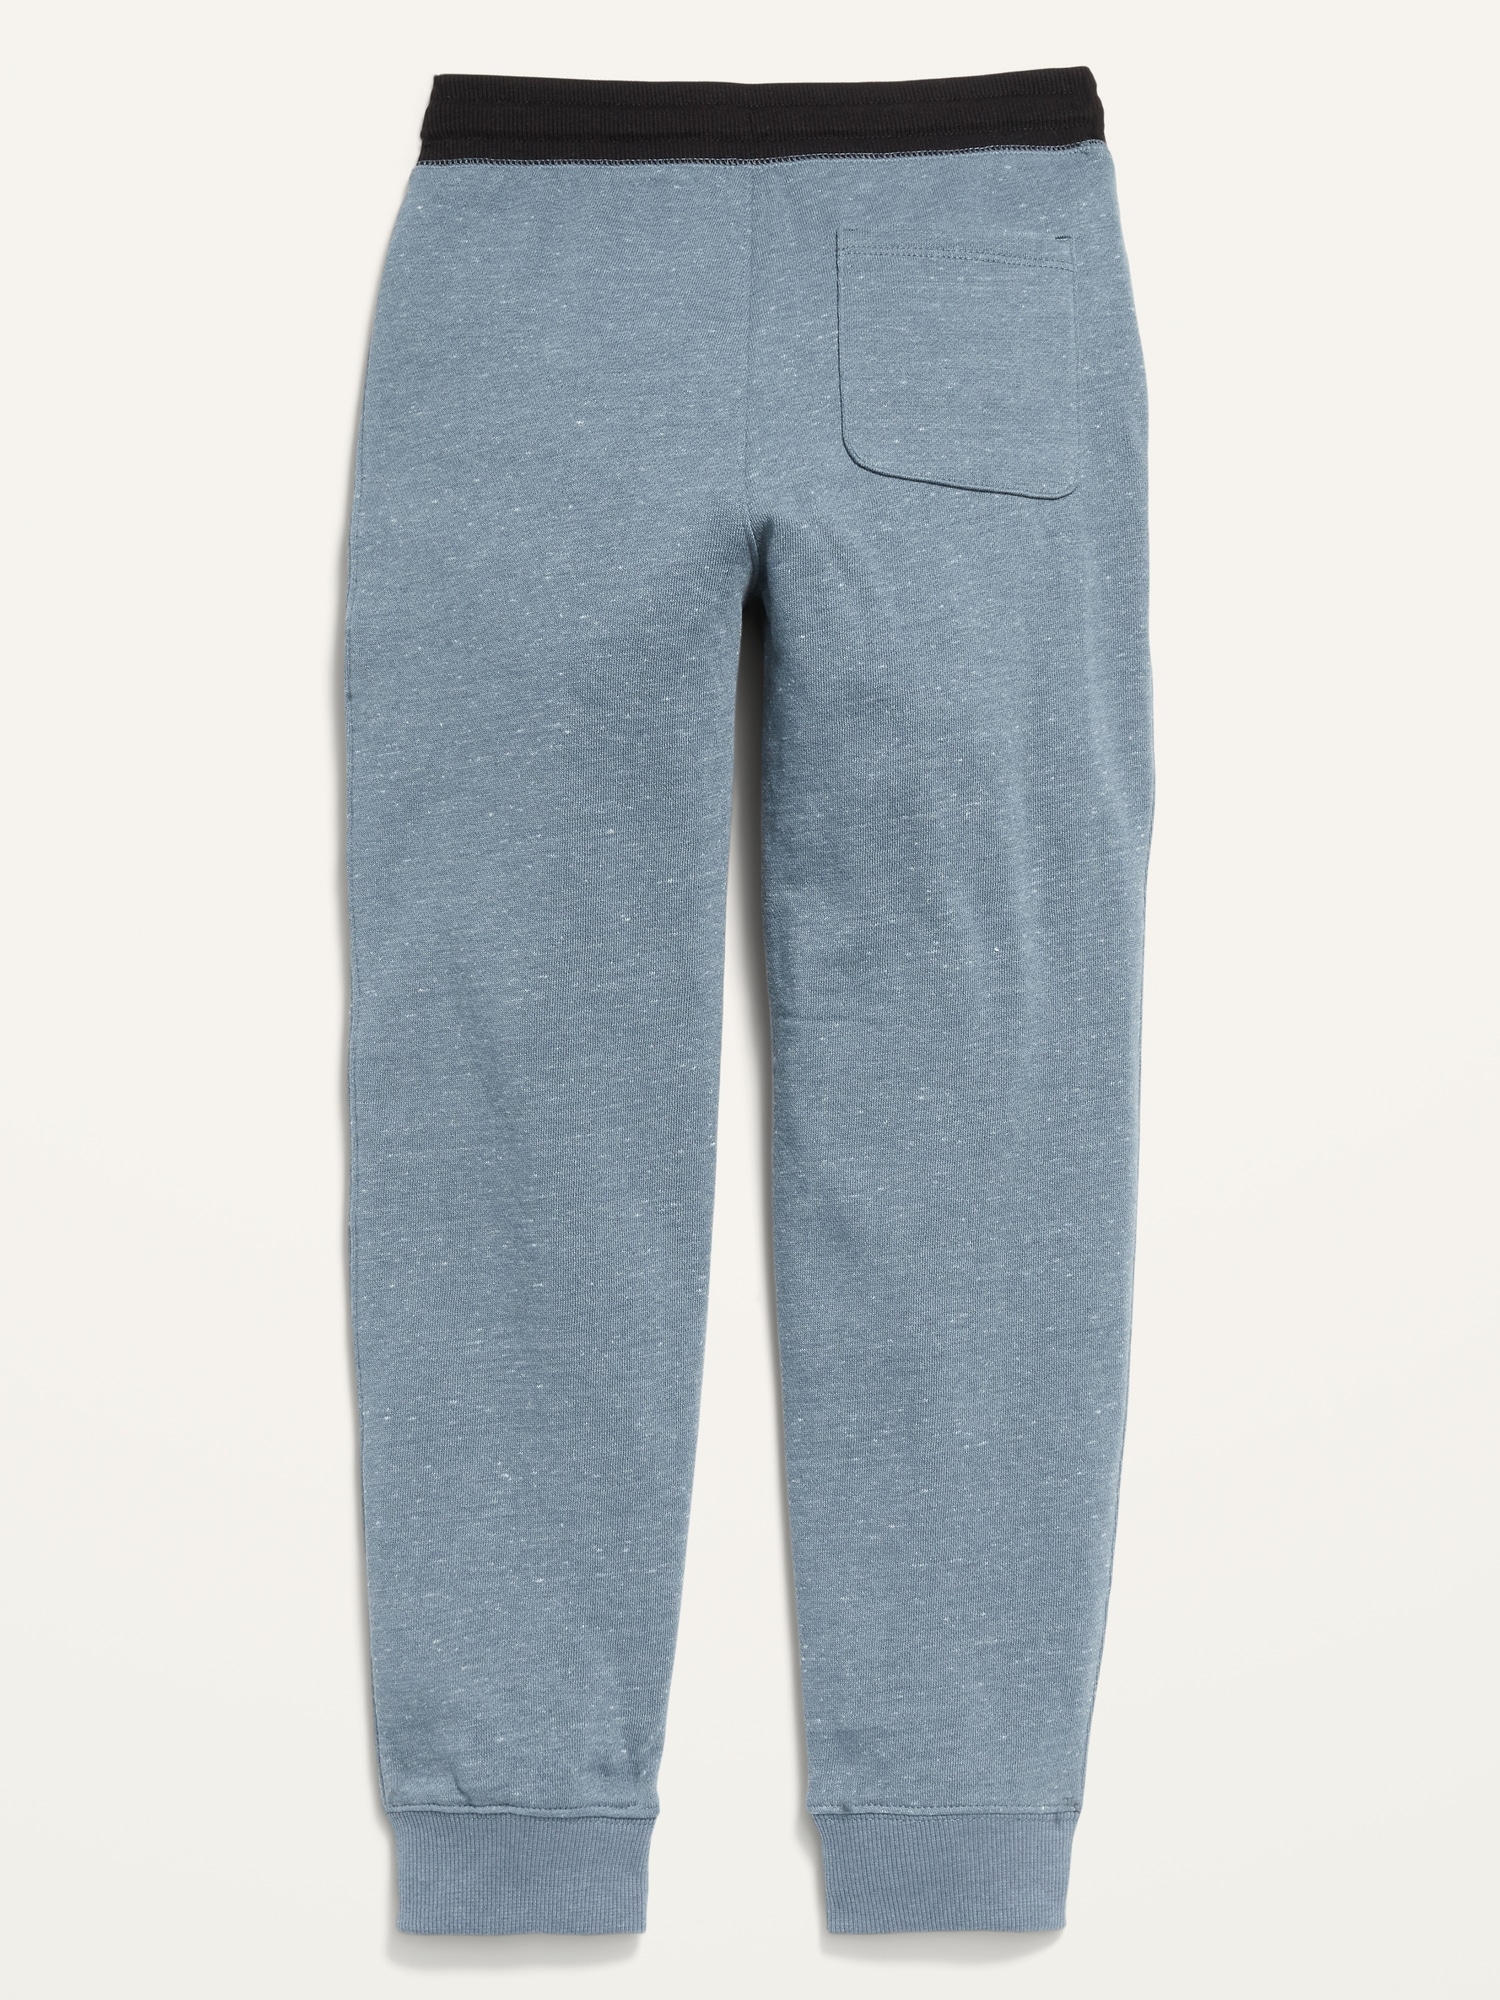 Women's Cozy Fleece Sweatpants